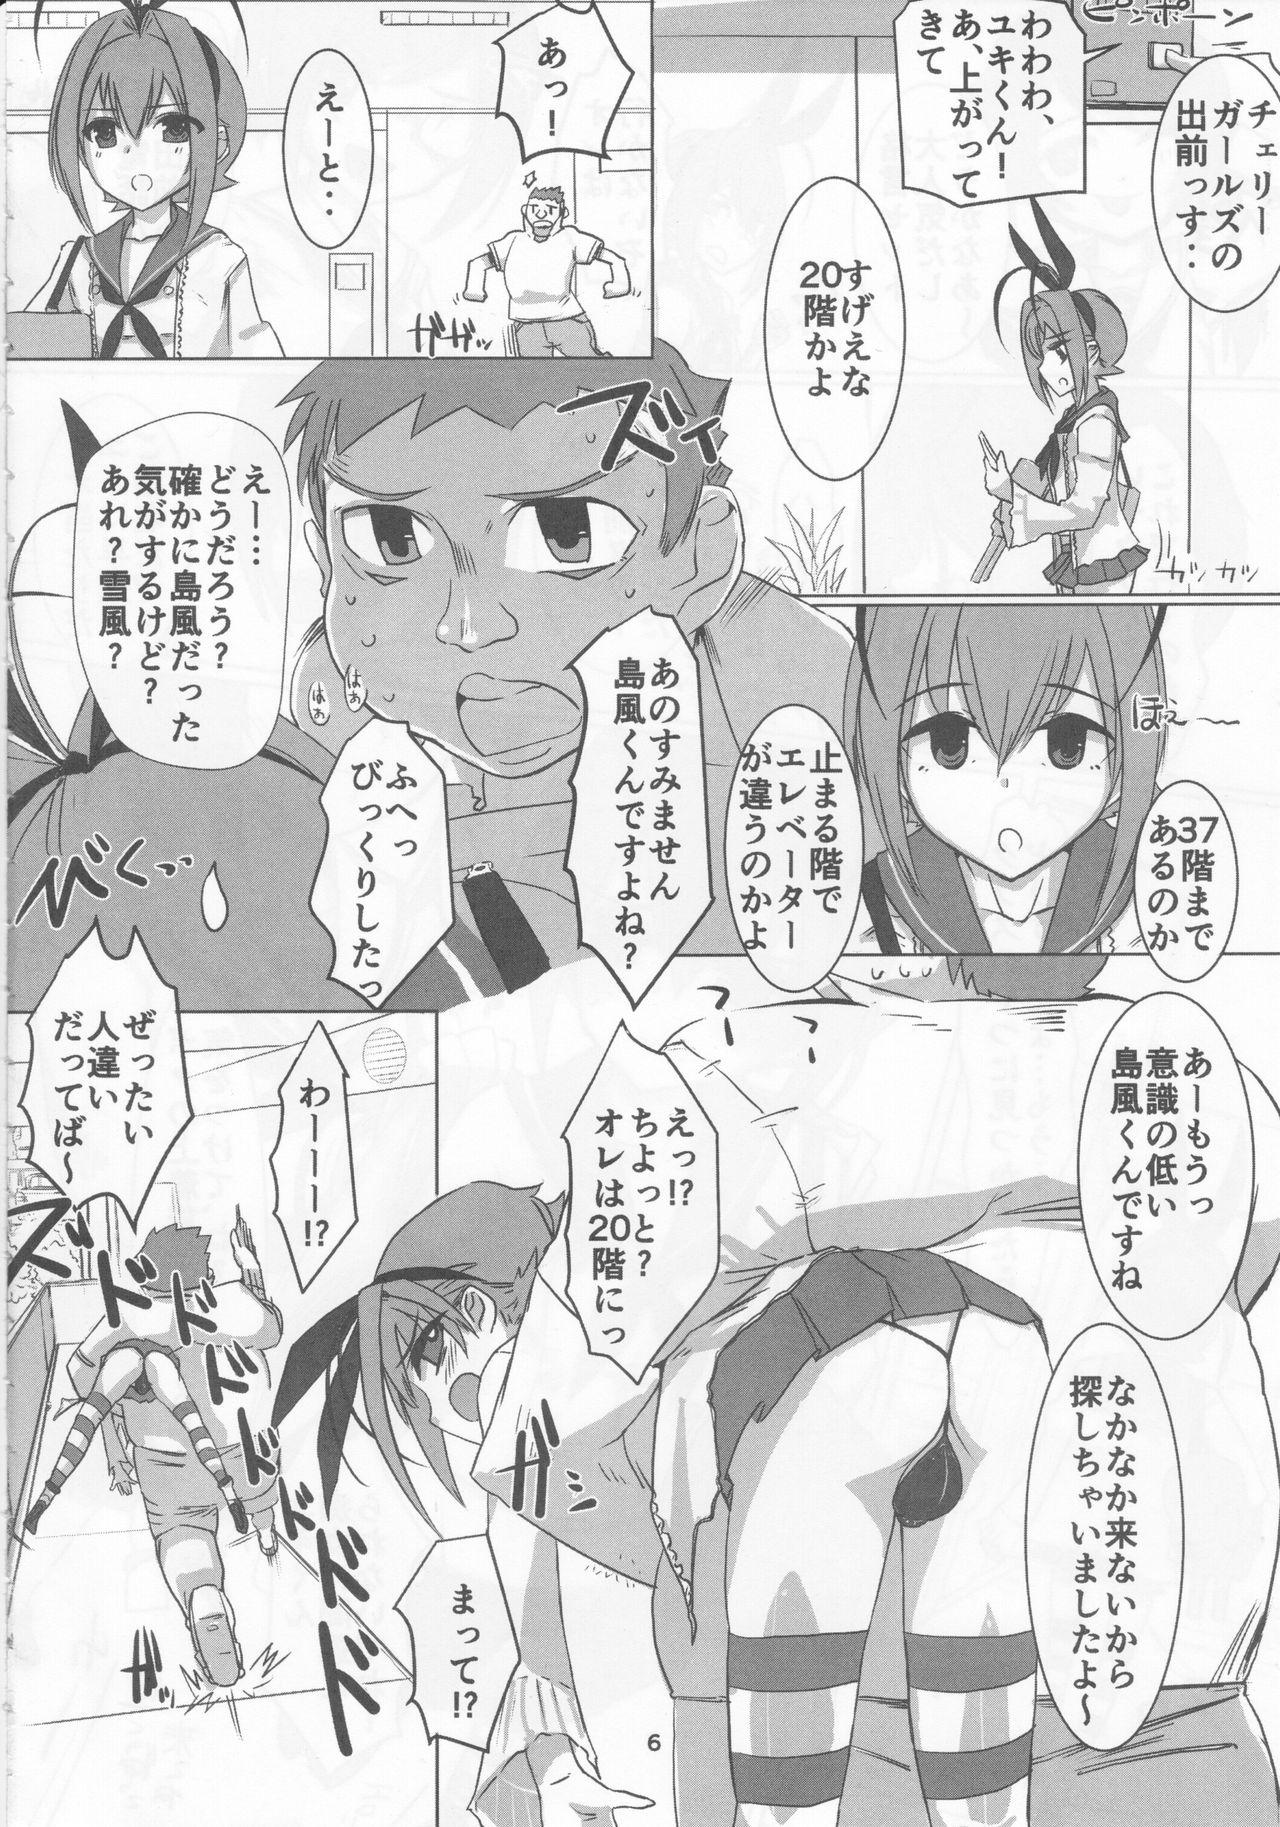 Facials Sakurairo Shounen Sabou 13 - Otokonoko wa maid fuku ga osuki Stepfather - Page 5